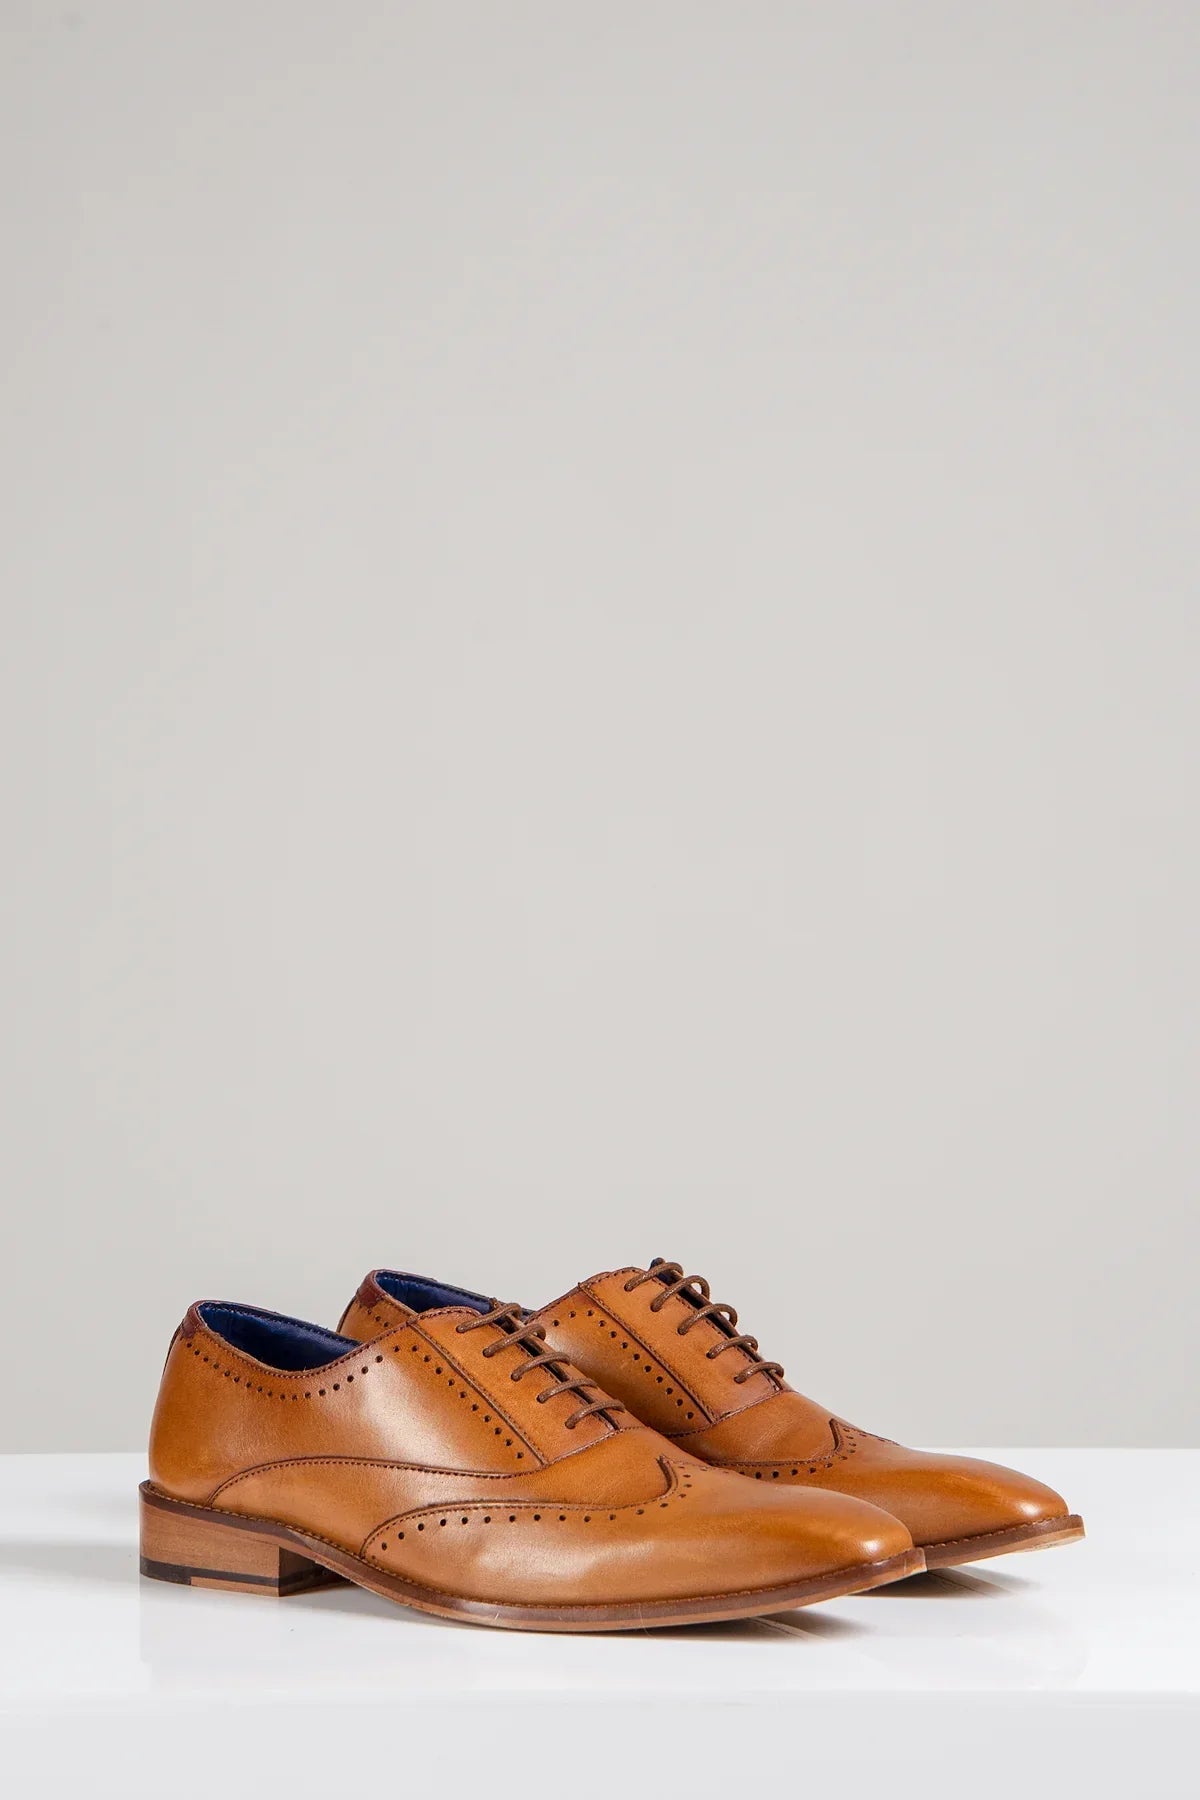 Hnedé kožené topánky, Marc Darcy Carson, Wingtip brogue